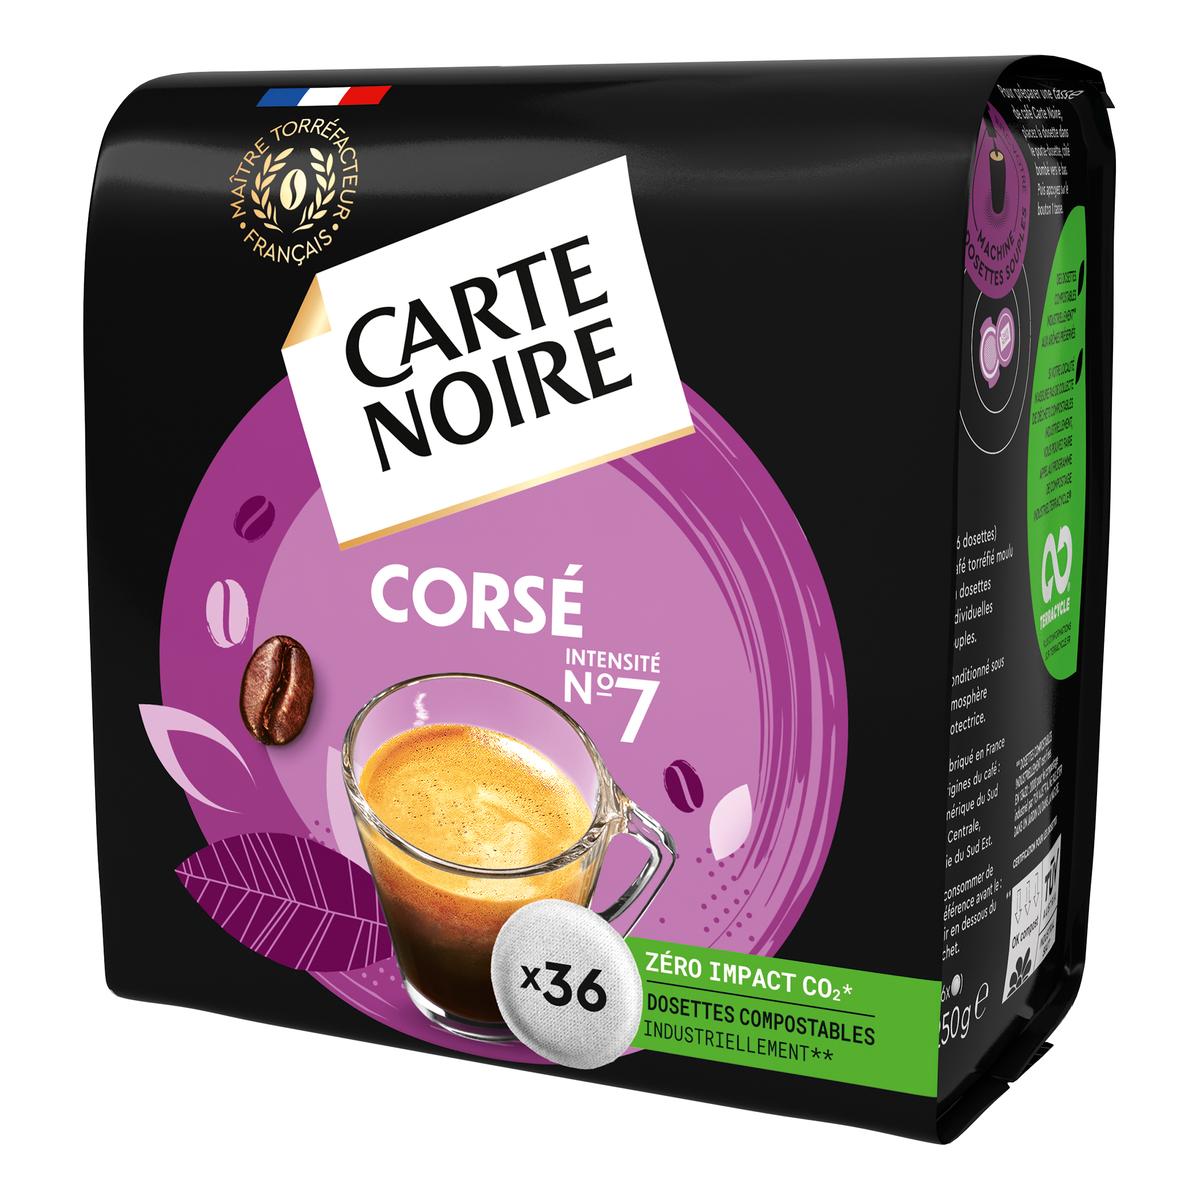 CARTE NOIRE Dosettes souples de café Espresso intensité 8 60